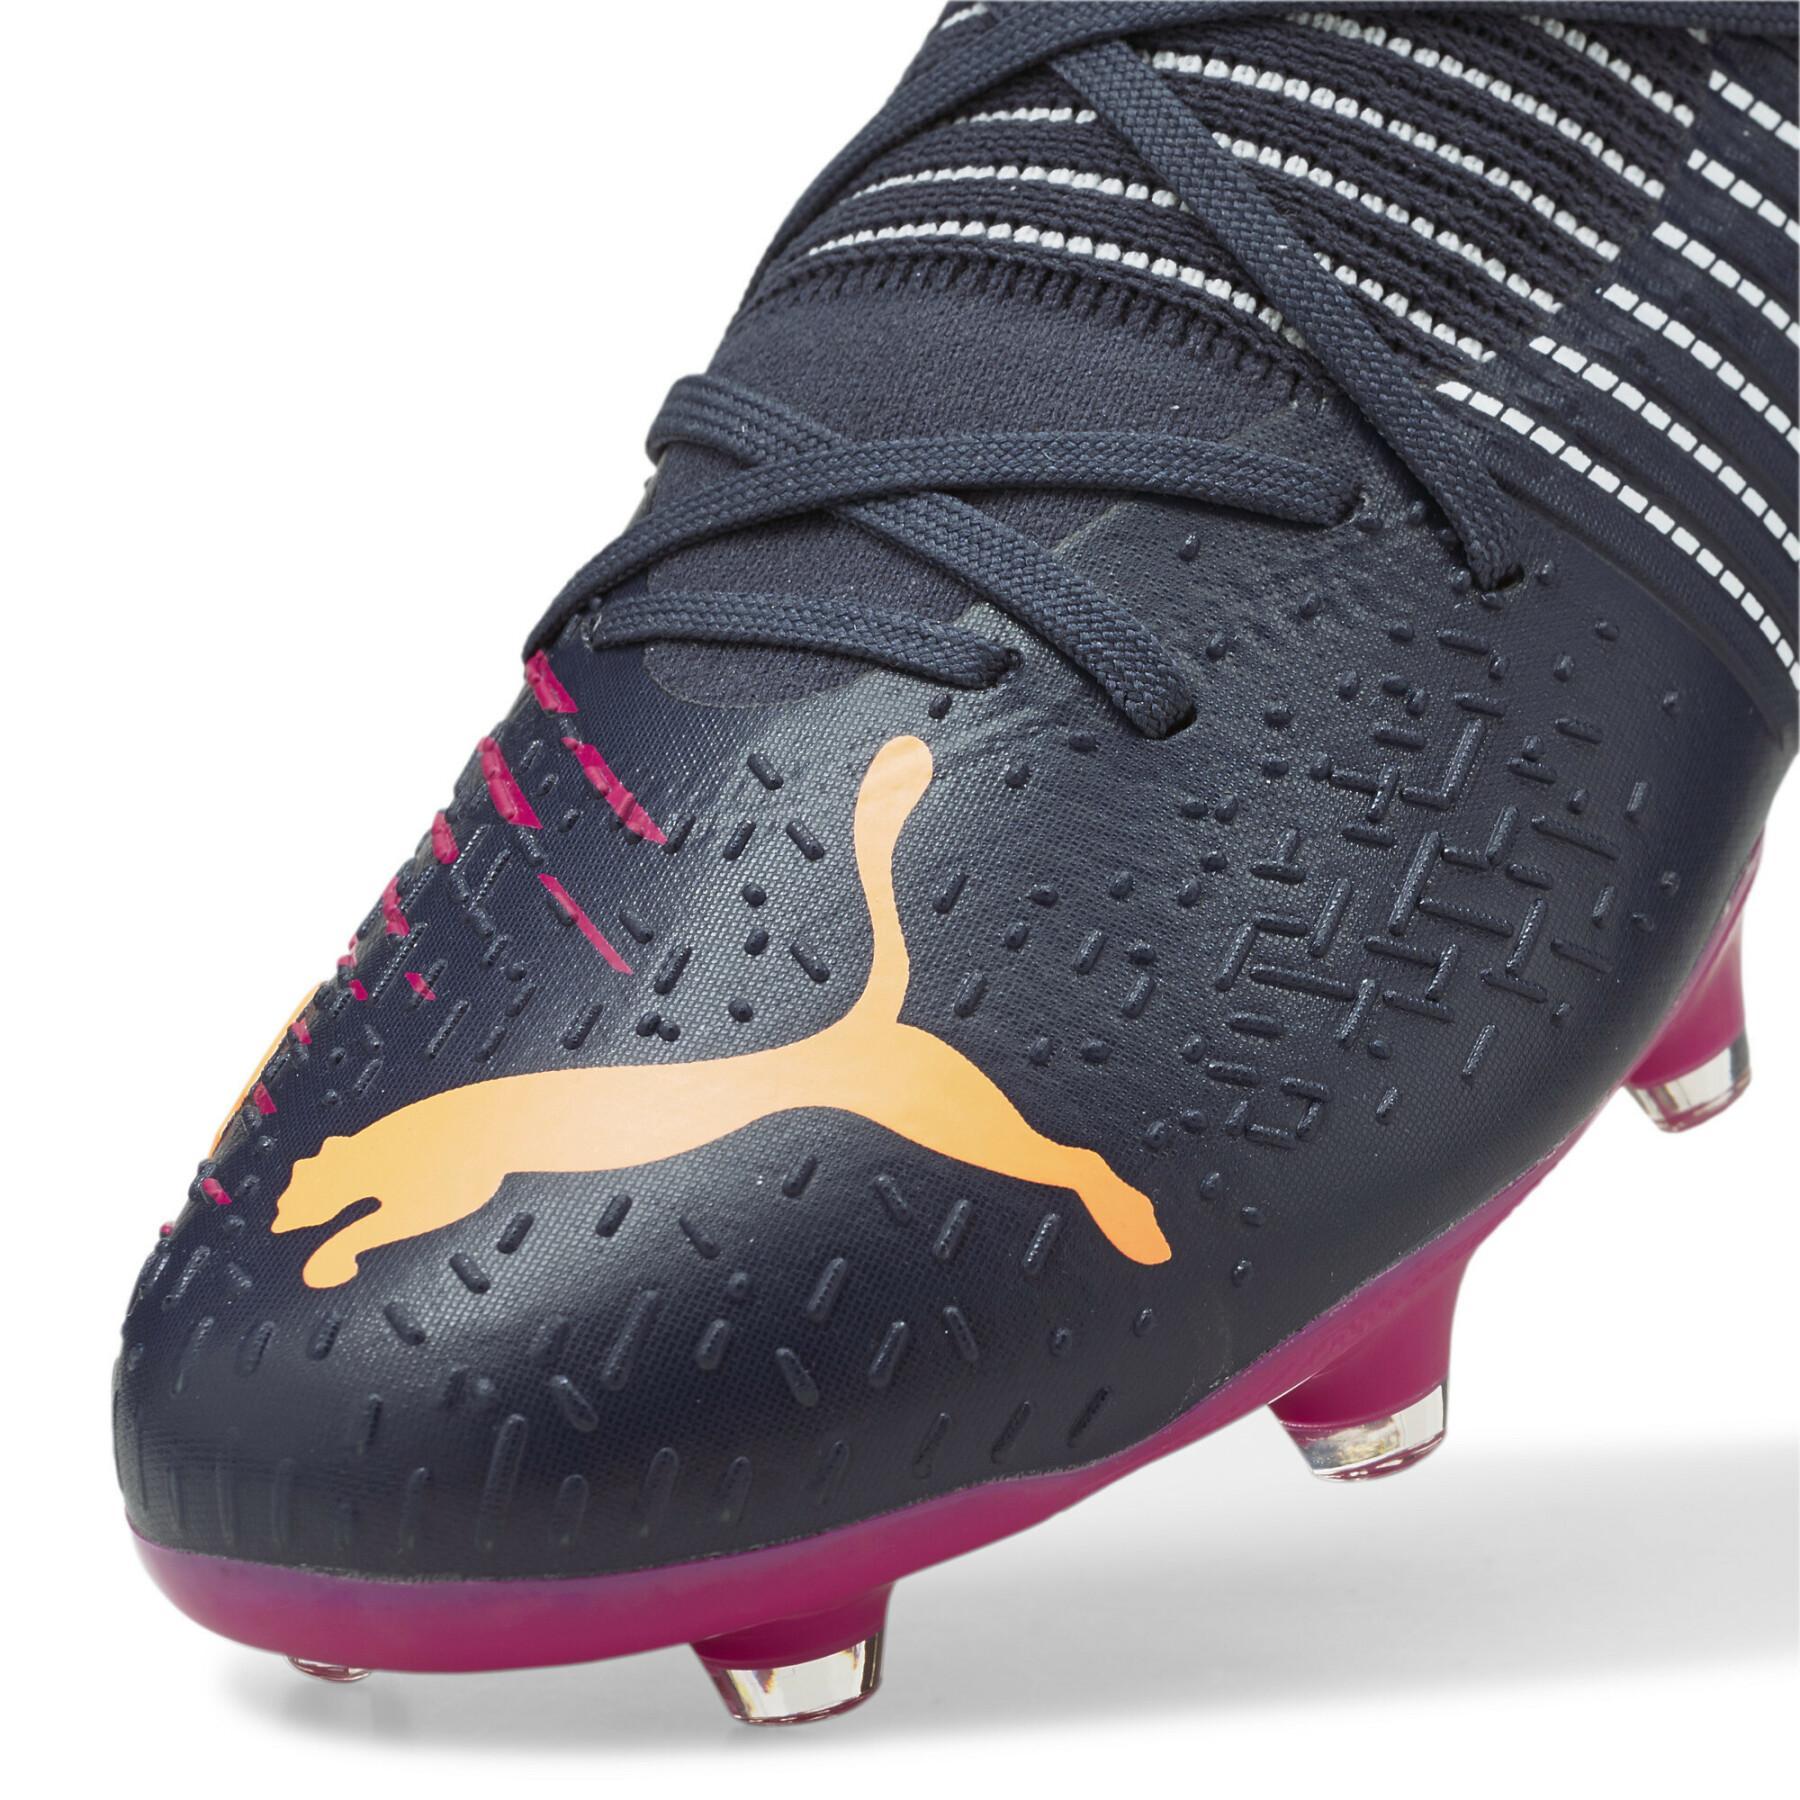 Soccer shoes Puma FUTURE Z 3.2 FG/AG